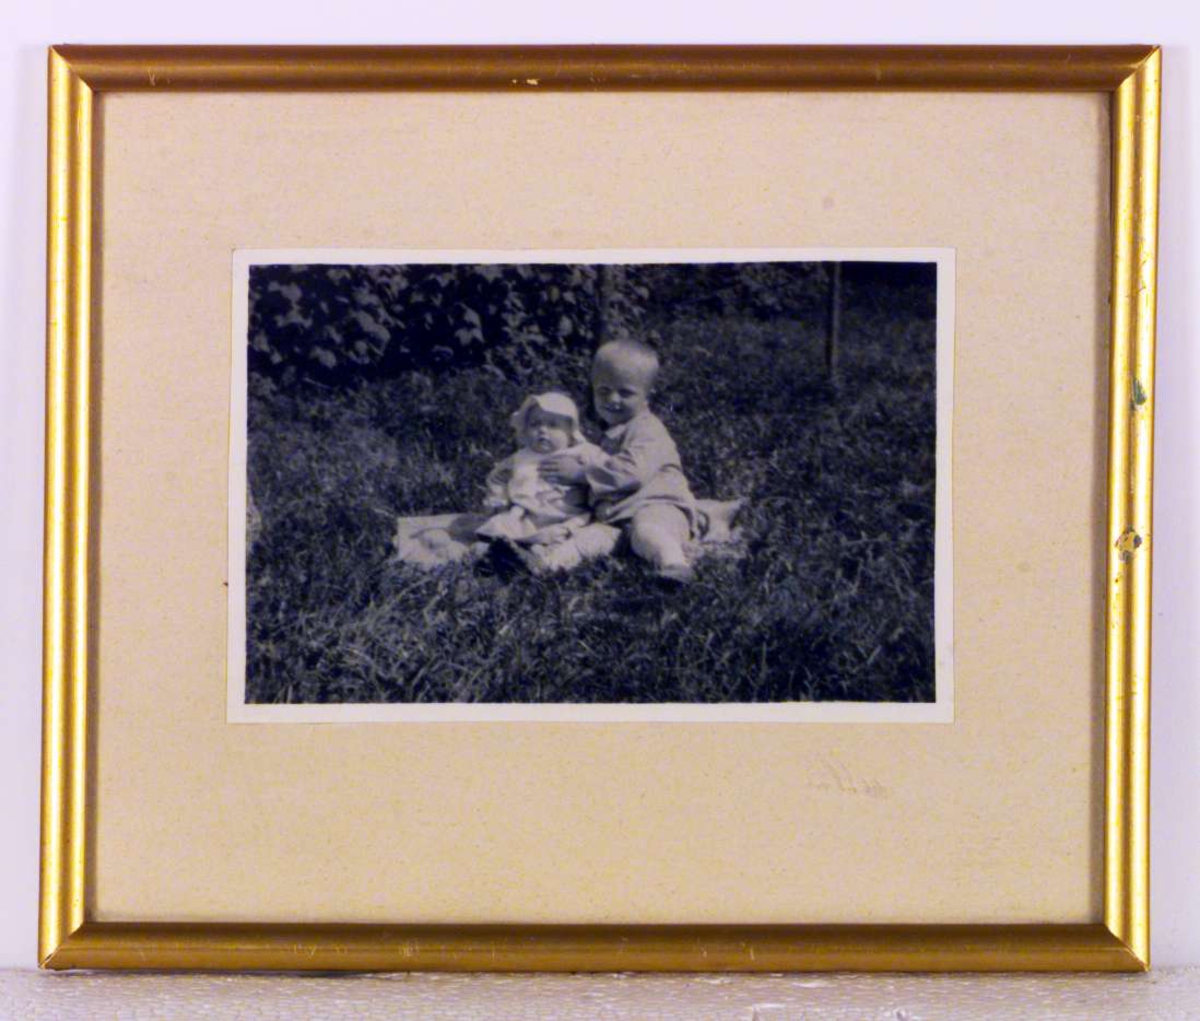 Jo Ørjasæter, ca. 2 år gammel, sammen med sin lillesøster.